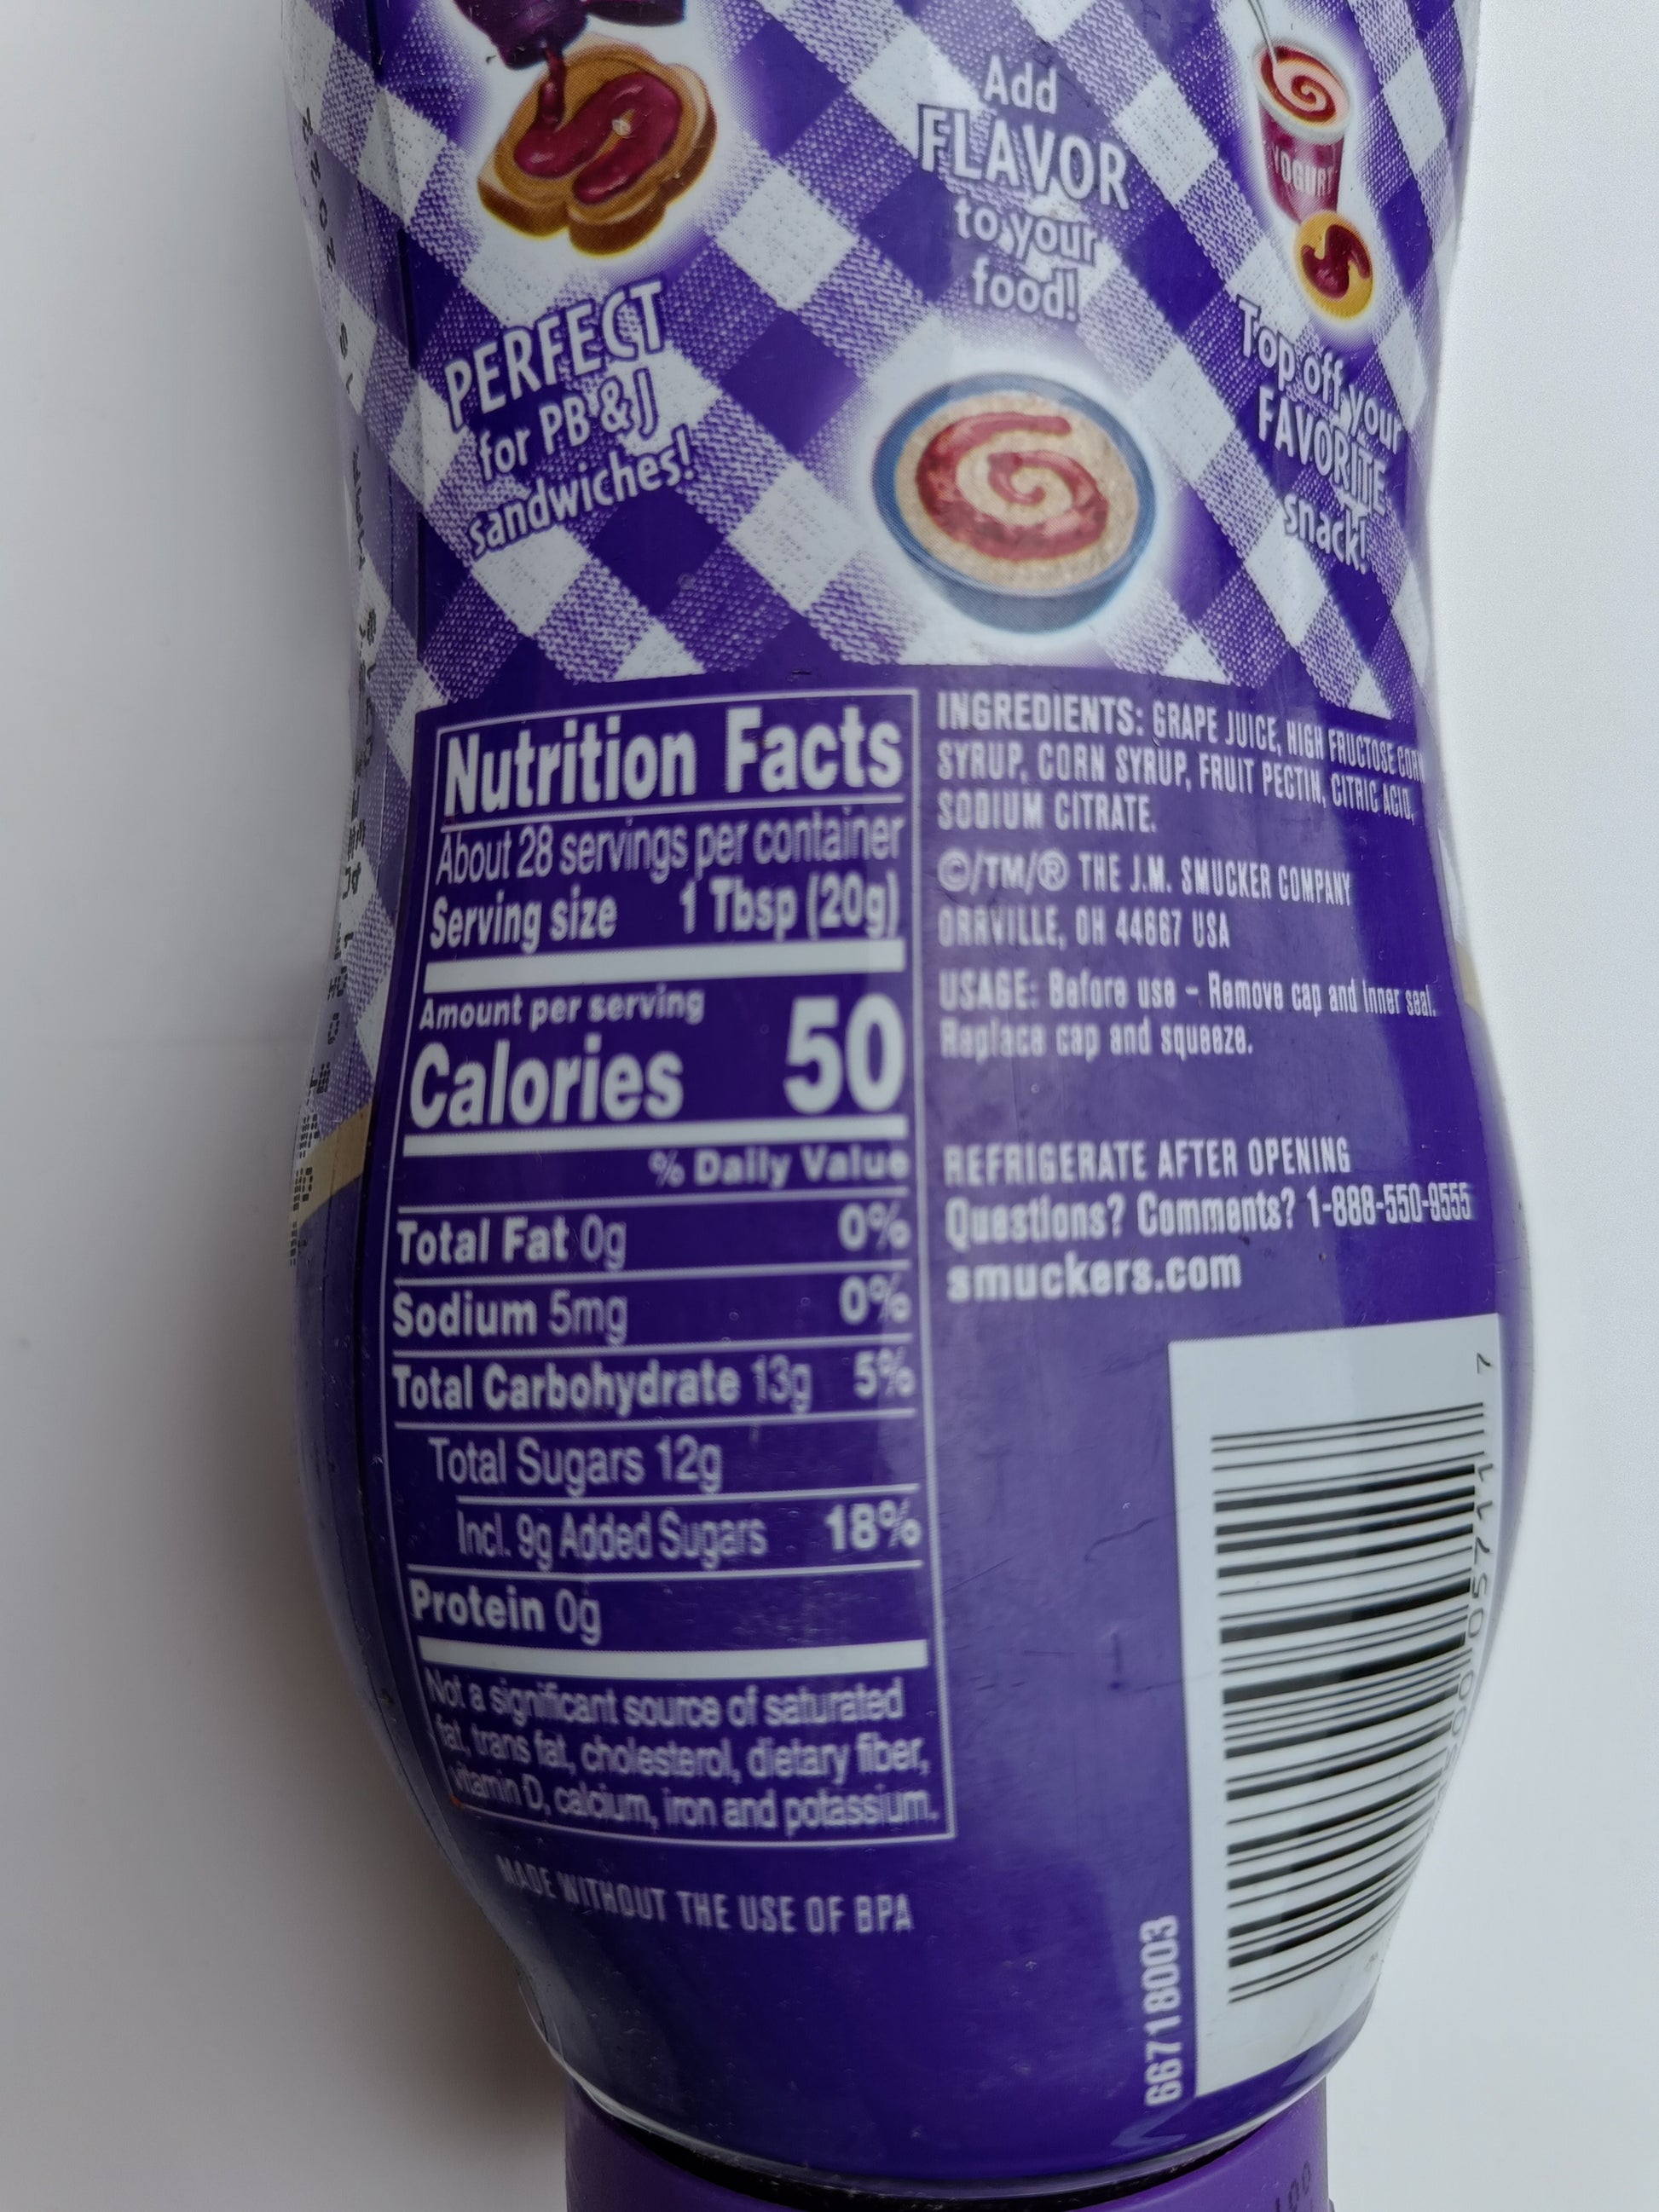 Tabulka nutričních odnot na balení US marmelády hroznové